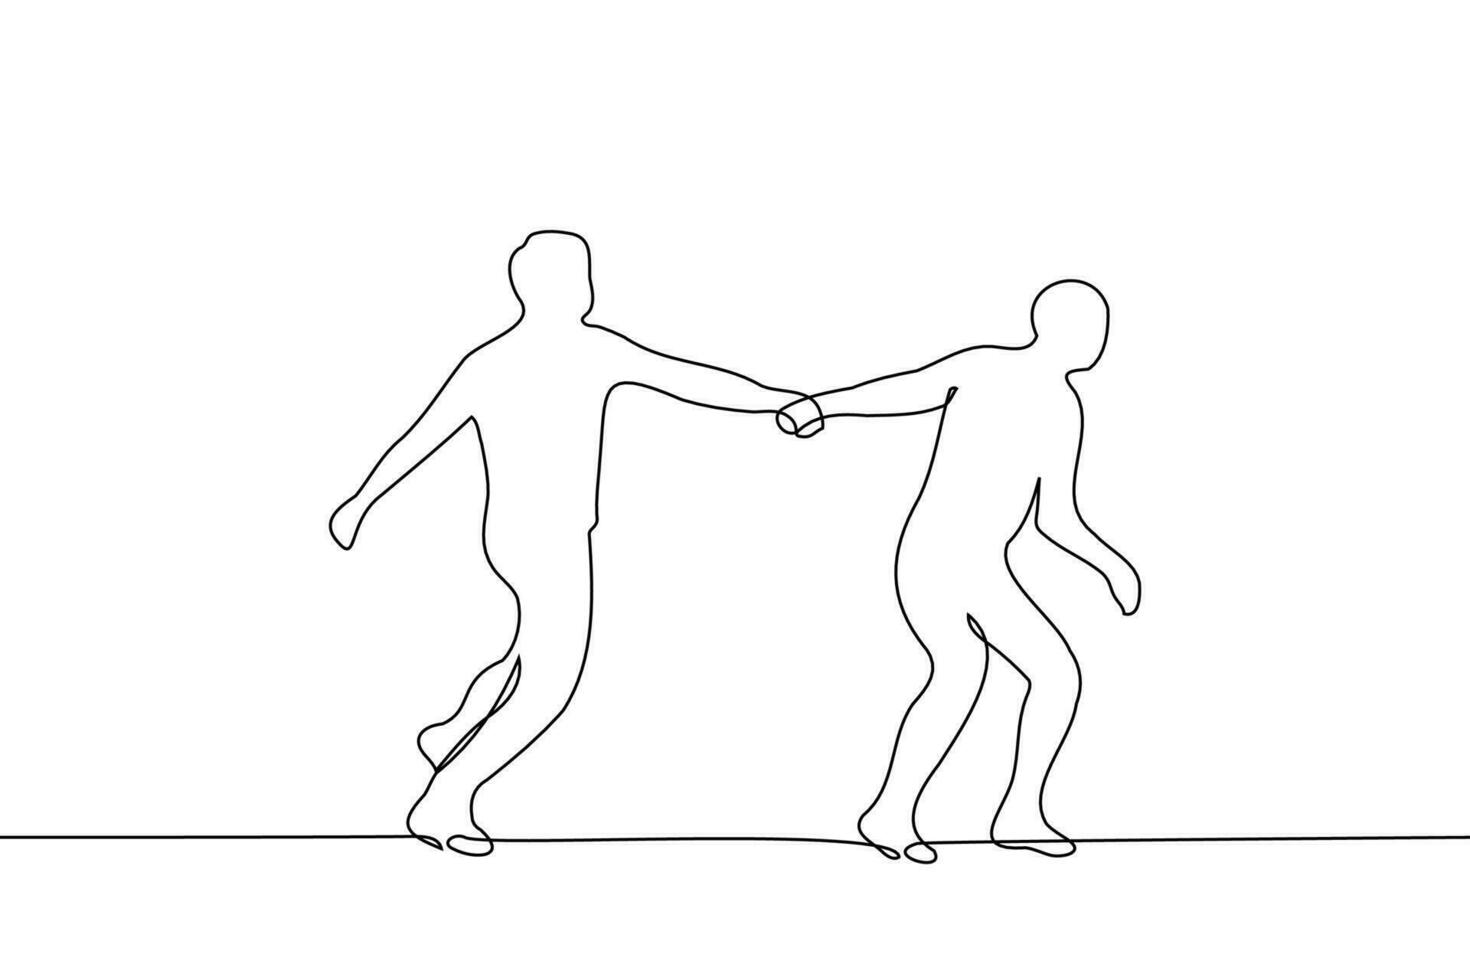 homem corre agarrando a mão do outro - 1 linha desenhando vetor. conceito silhueta do corrida pessoas 1 do que conduz vetor